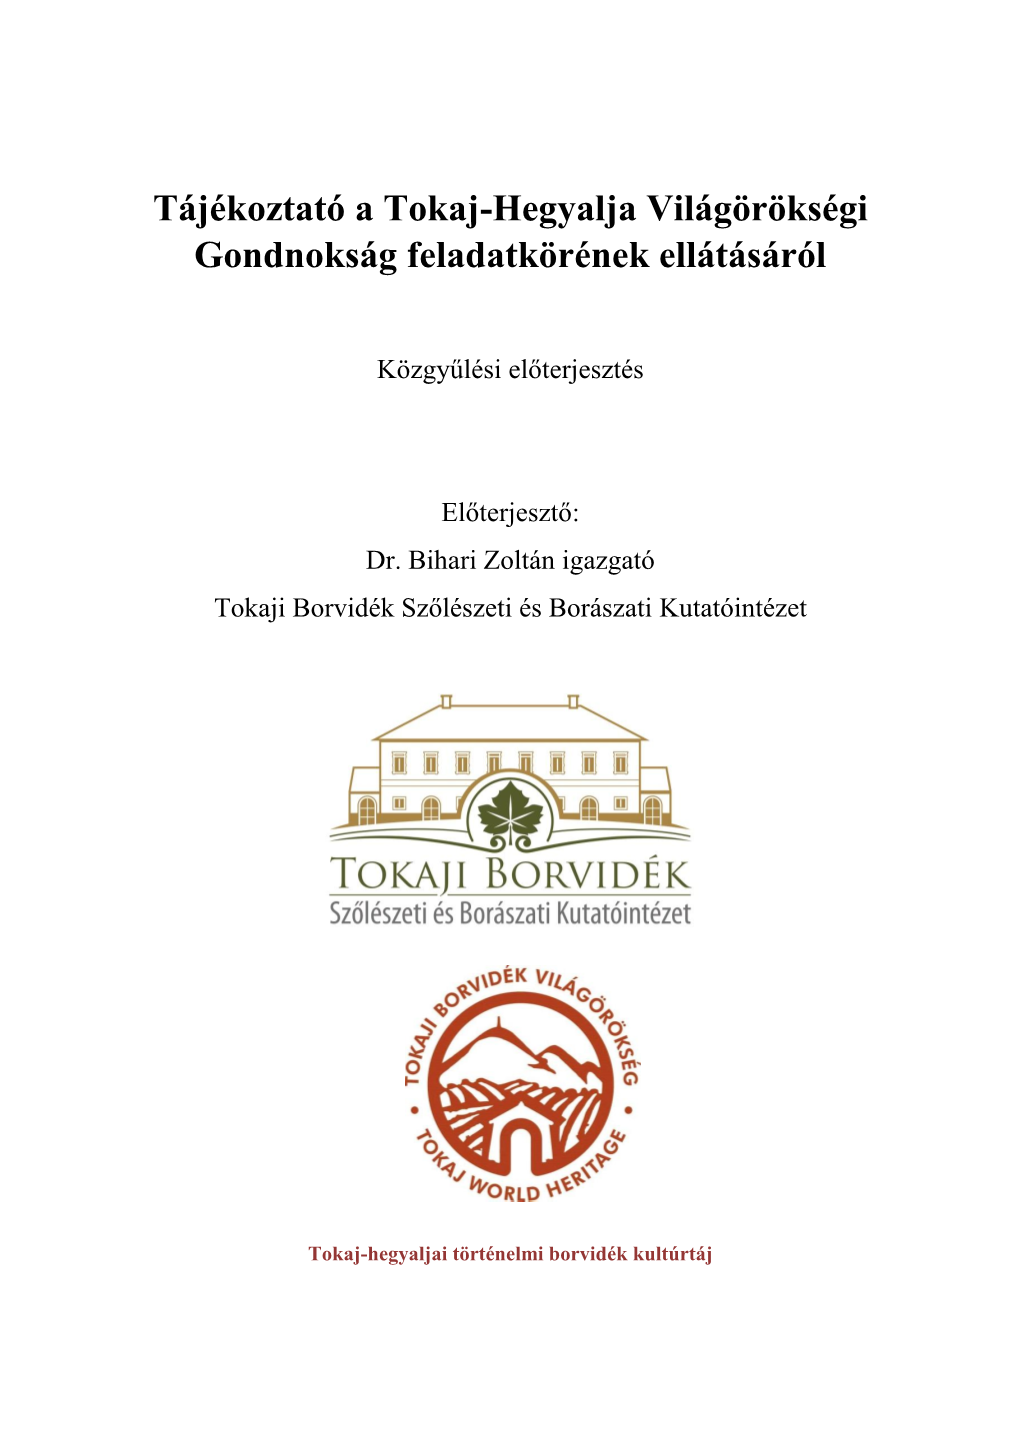 Tájékoztató a Tokaj-Hegyalja Világörökségi Gondnokság Feladatkörének Ellátásáról